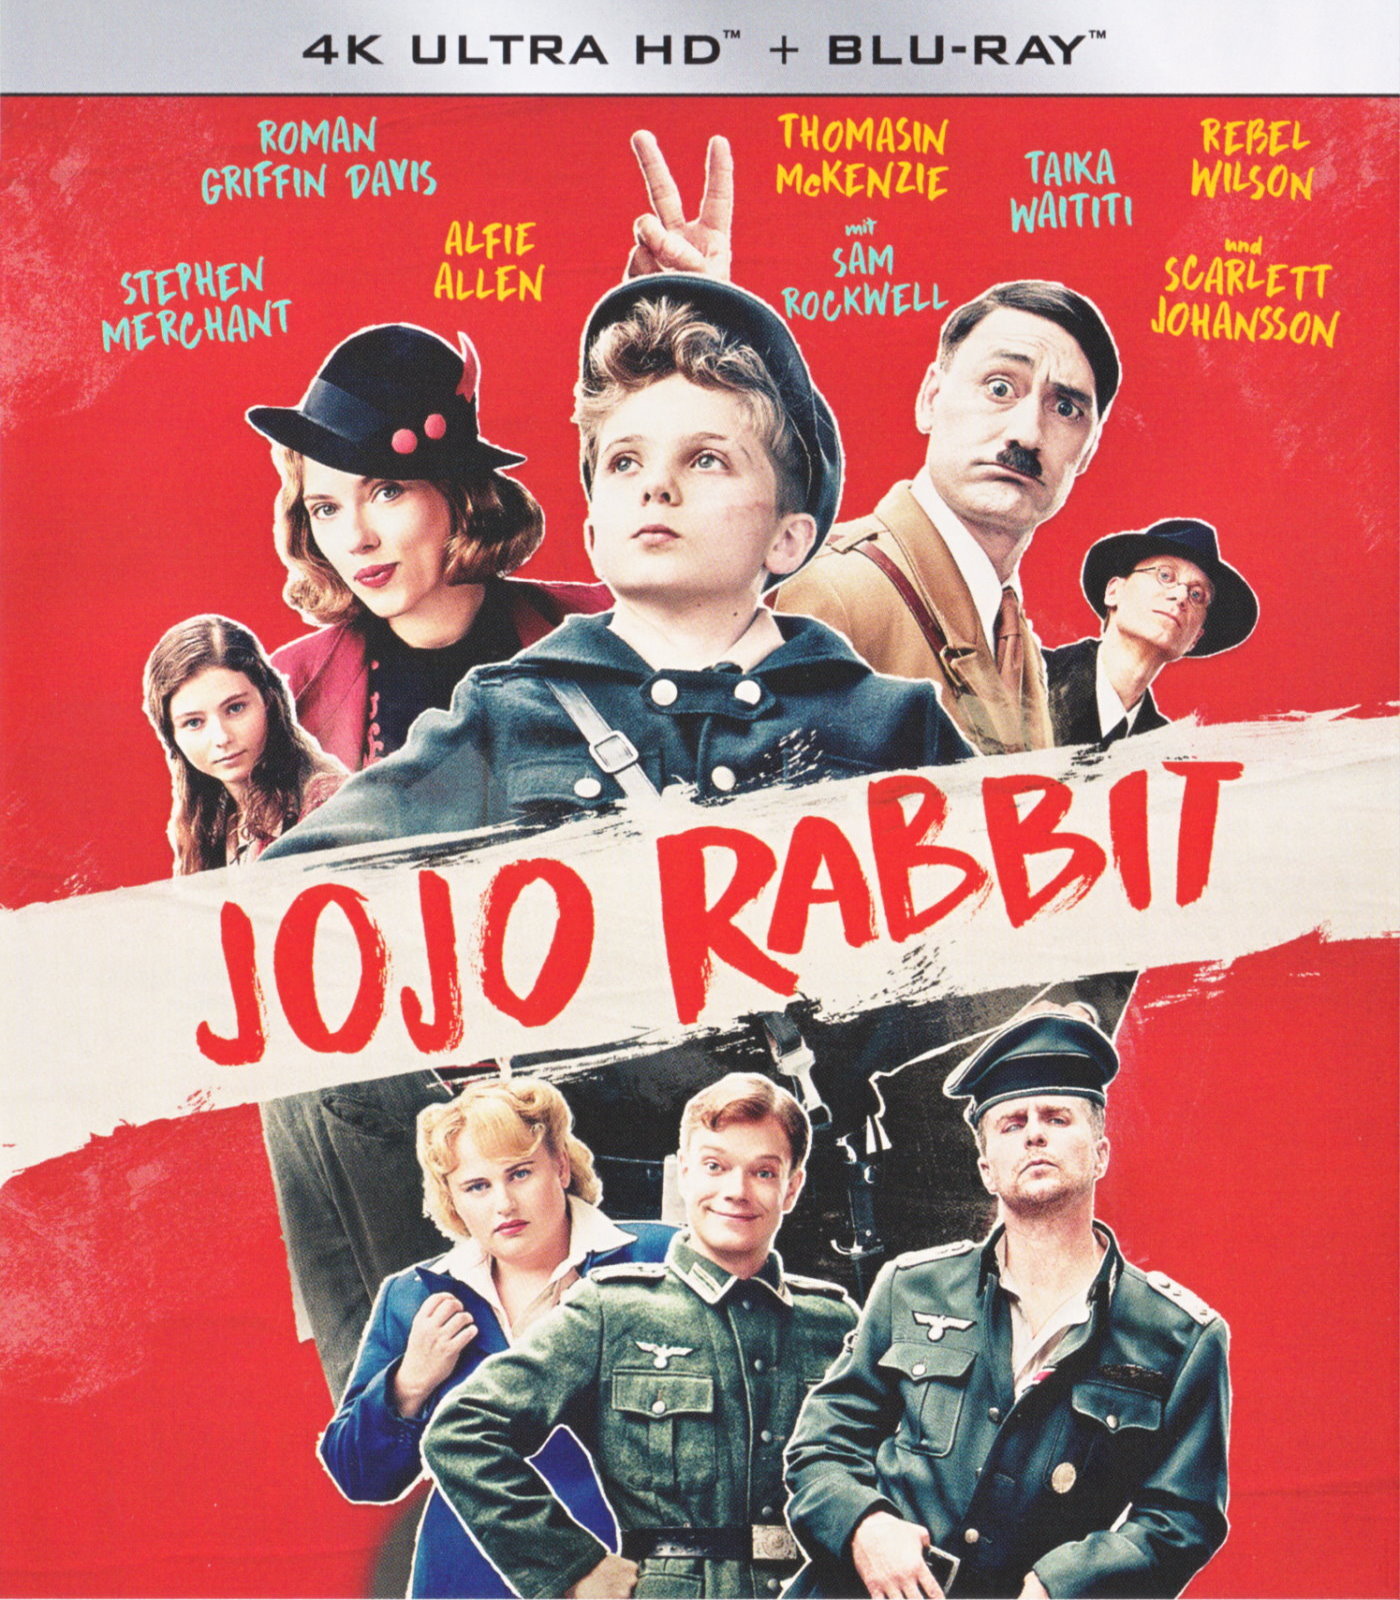 Cover - Jojo Rabbit.jpg